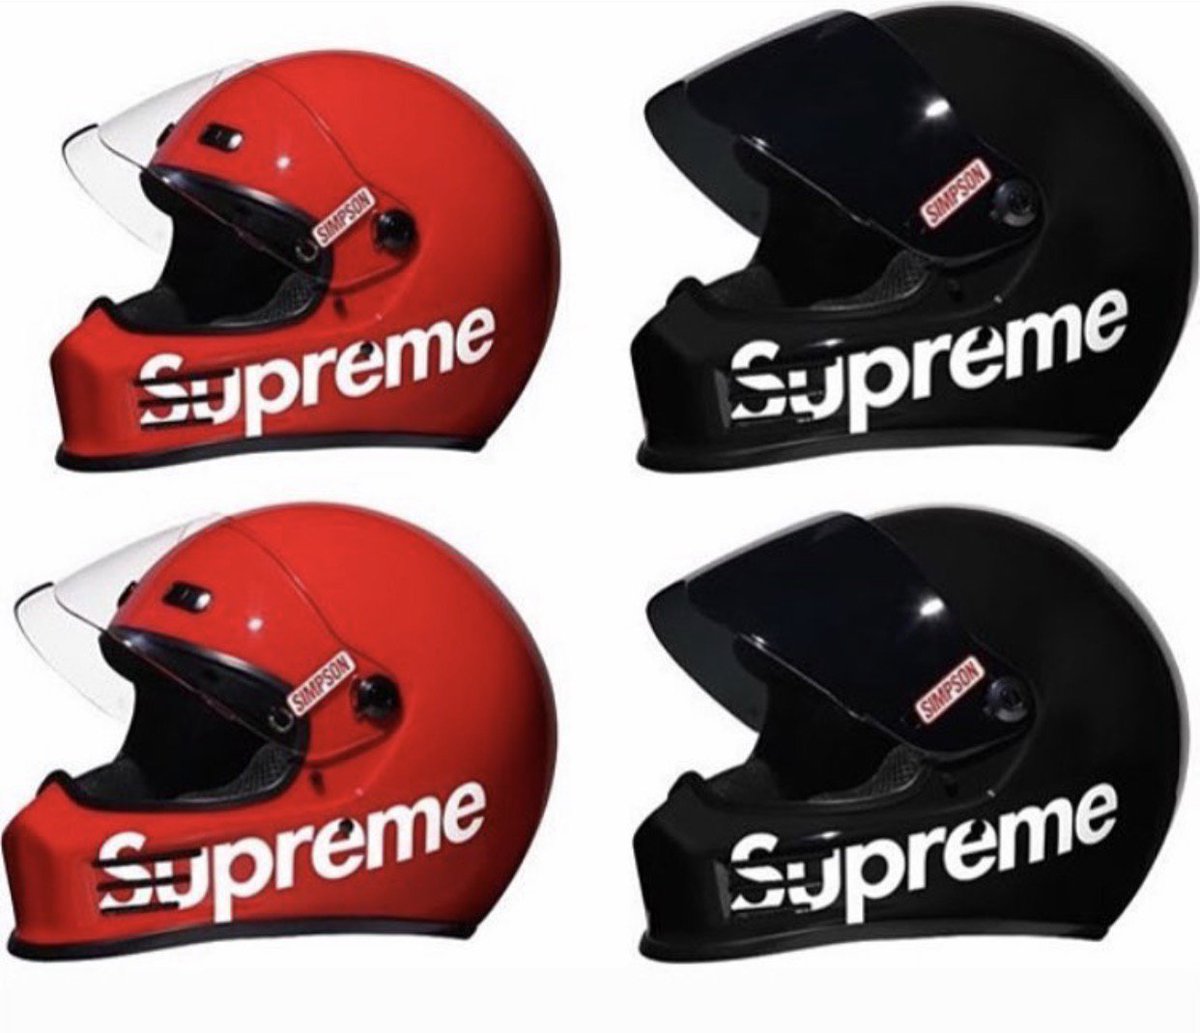 supreme bike helmet